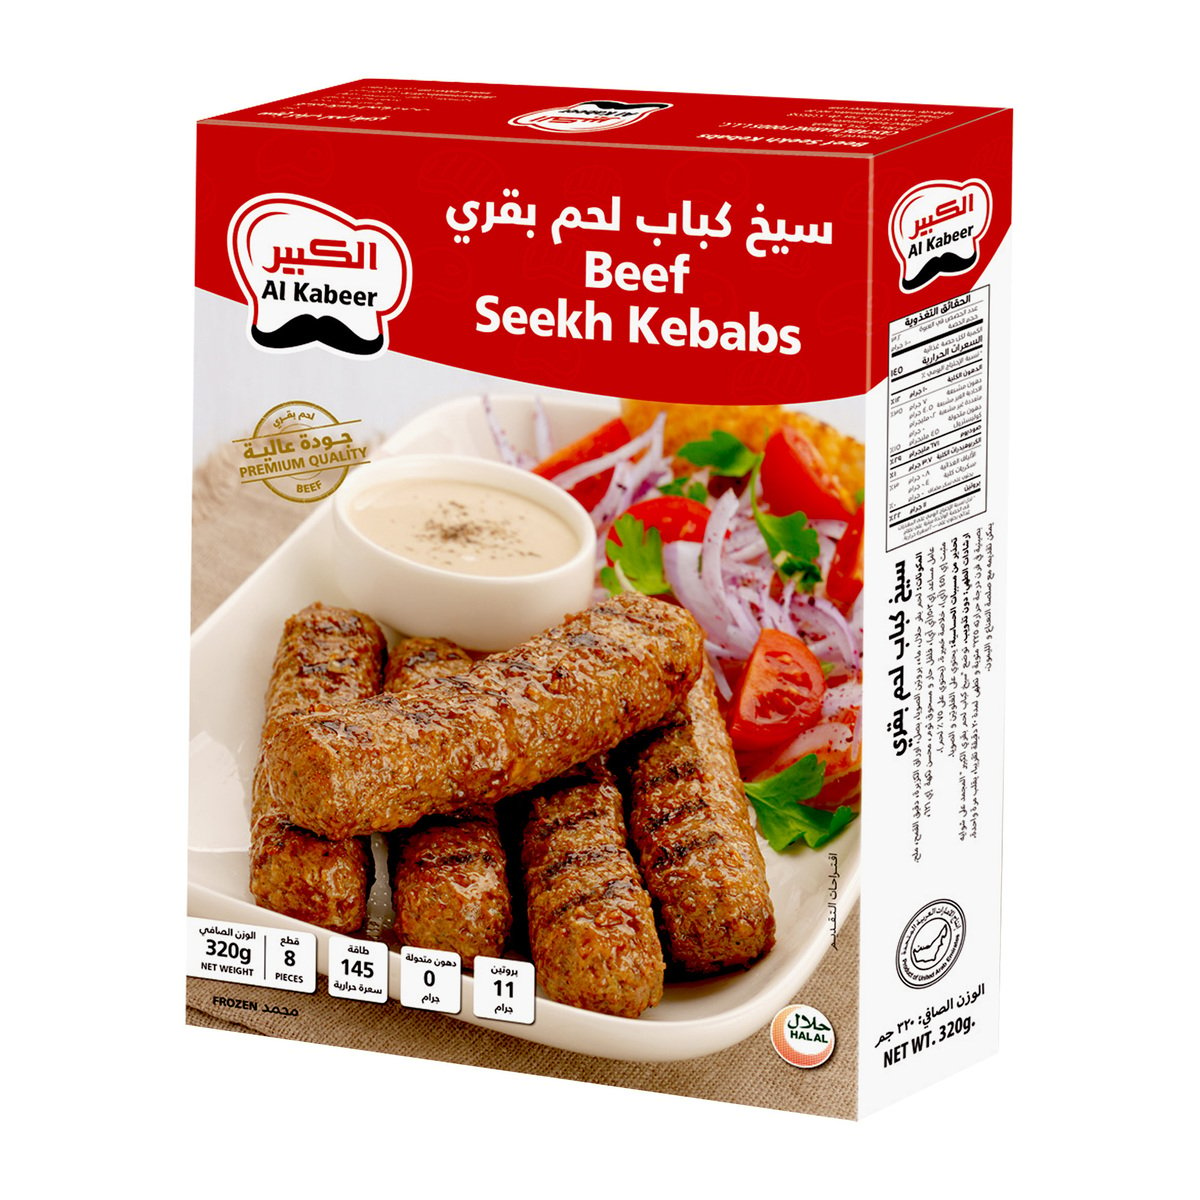 Al Kabeer Beef Seekh Kebabs 320 g